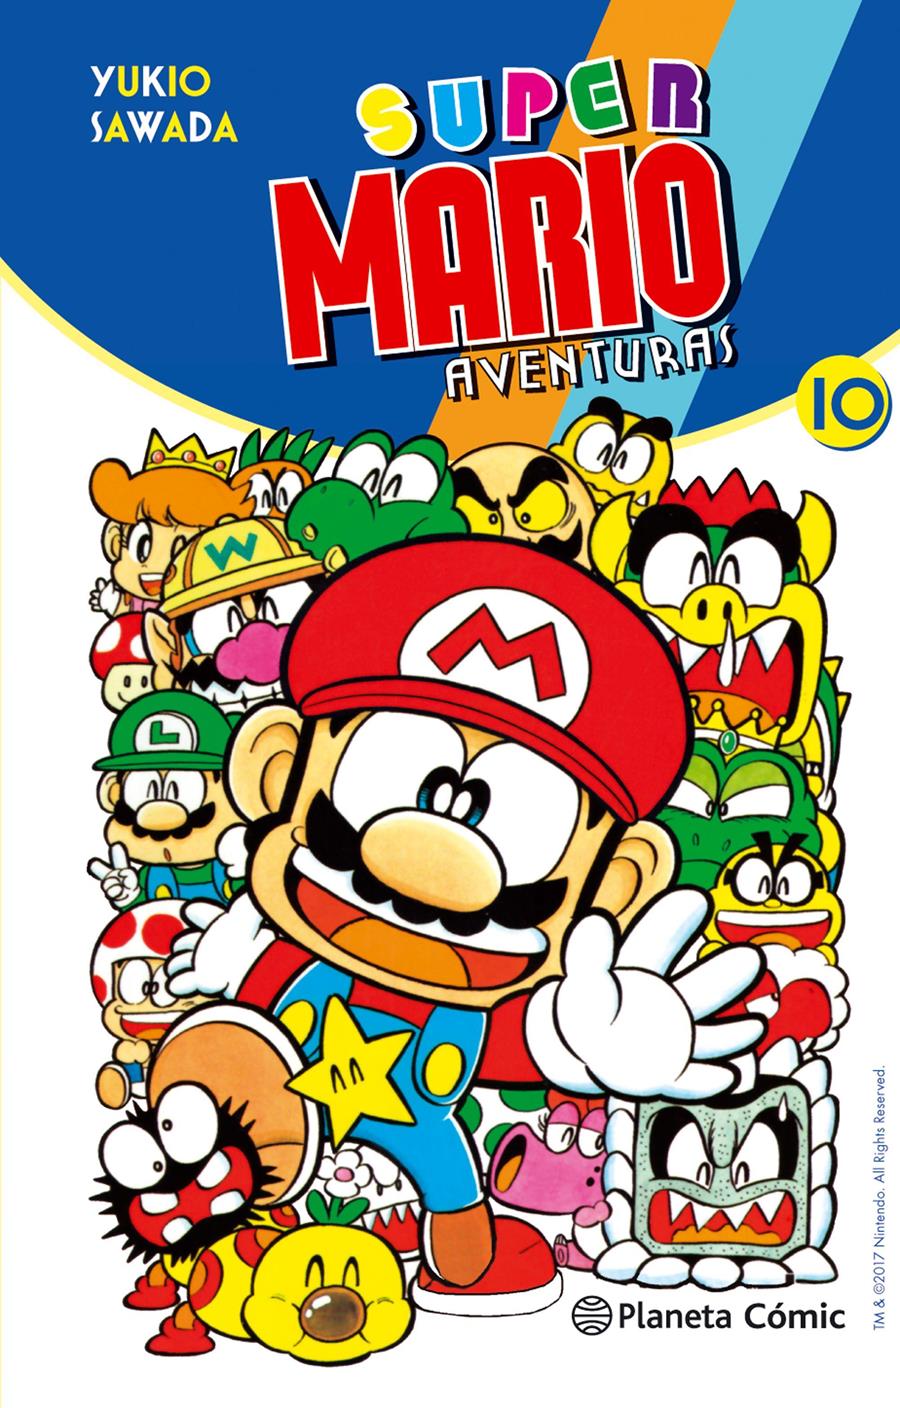 Super Mario nº 10 | N1117-PLA32 | Yukio Sawada | Terra de Còmic - Tu tienda de cómics online especializada en cómics, manga y merchandising